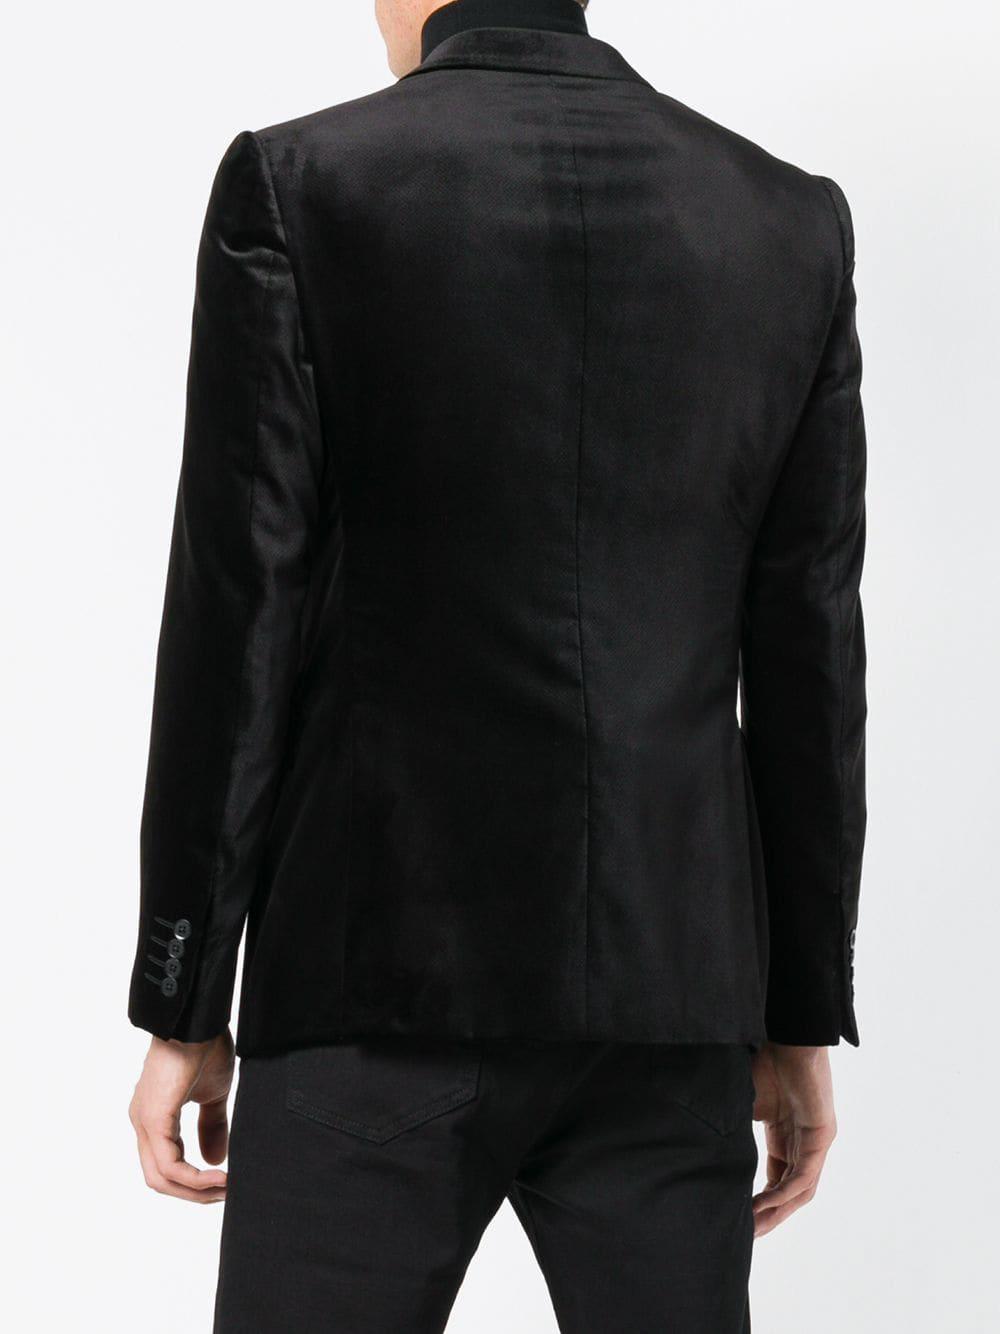 Emporio Armani Synthetic Velvet Dinner Jacket in Black for Men - Lyst